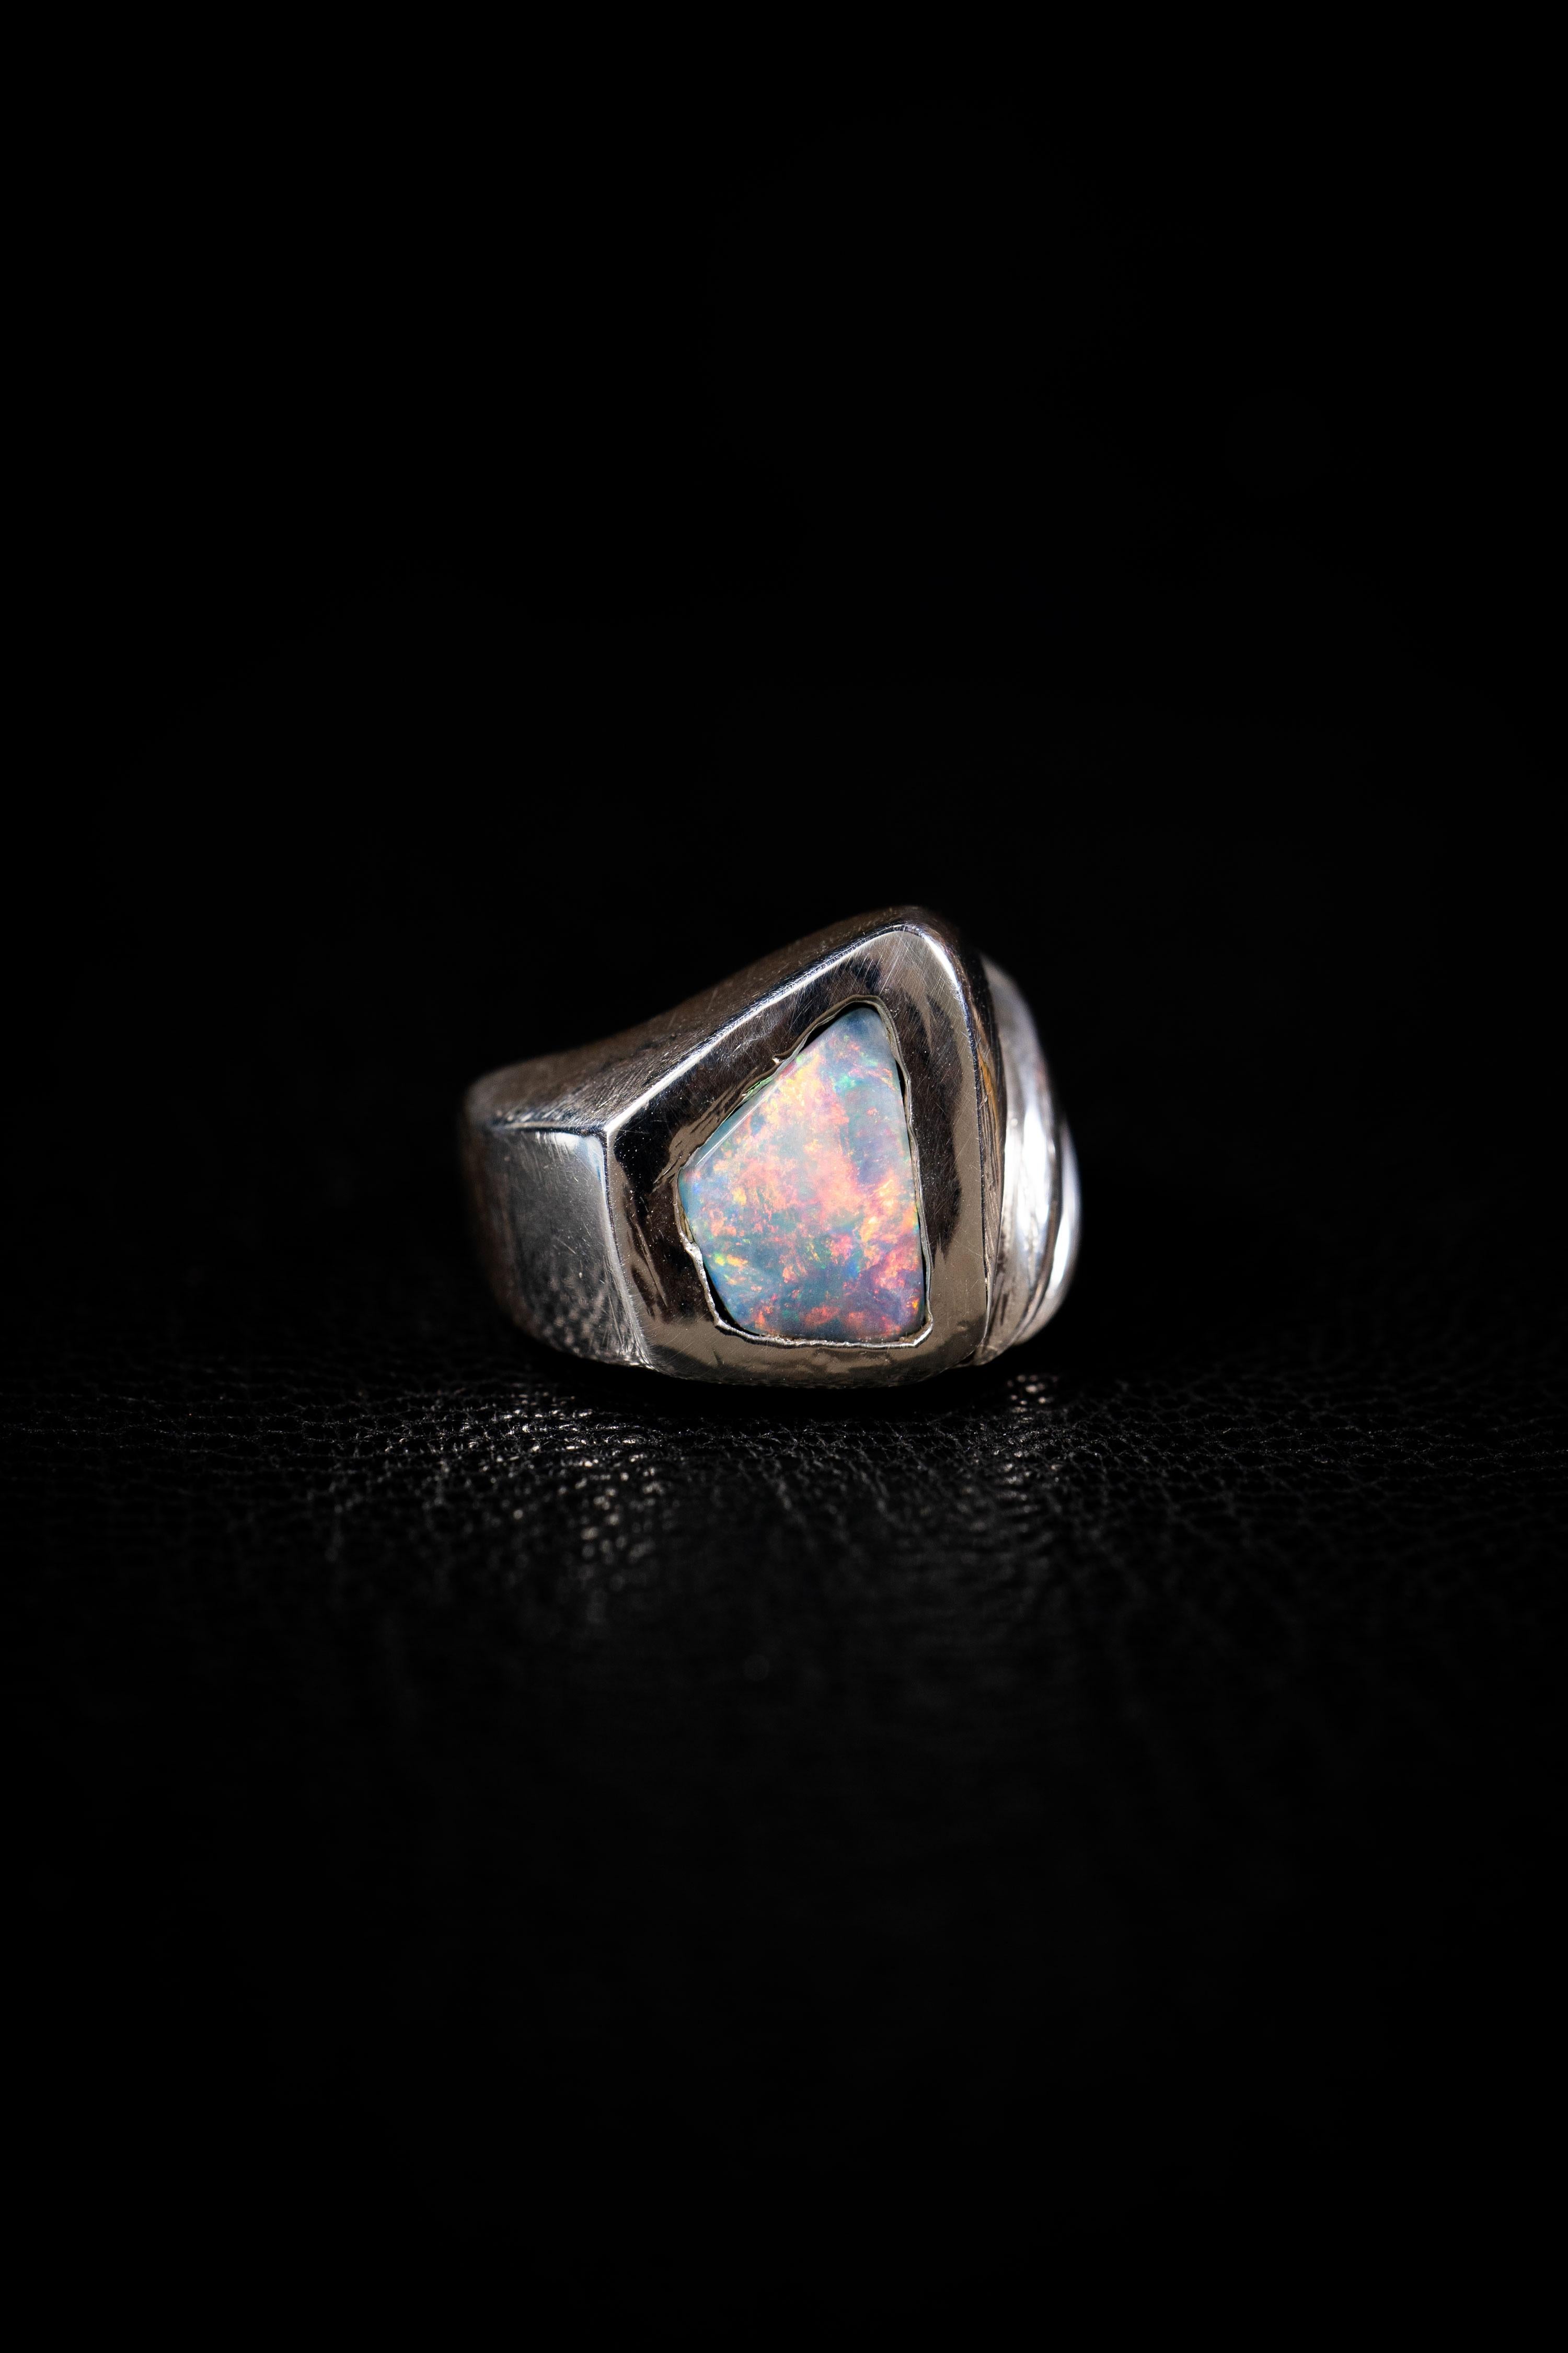 Through Dimensions ist ein einzigartiger Ring von Ken Fury, der von Hand geschnitzt und in Sterlingsilber gegossen ist und einen seltenen echten australischen Opal-Doppelstein enthält.

Ringgröße: 9

Handsigniert